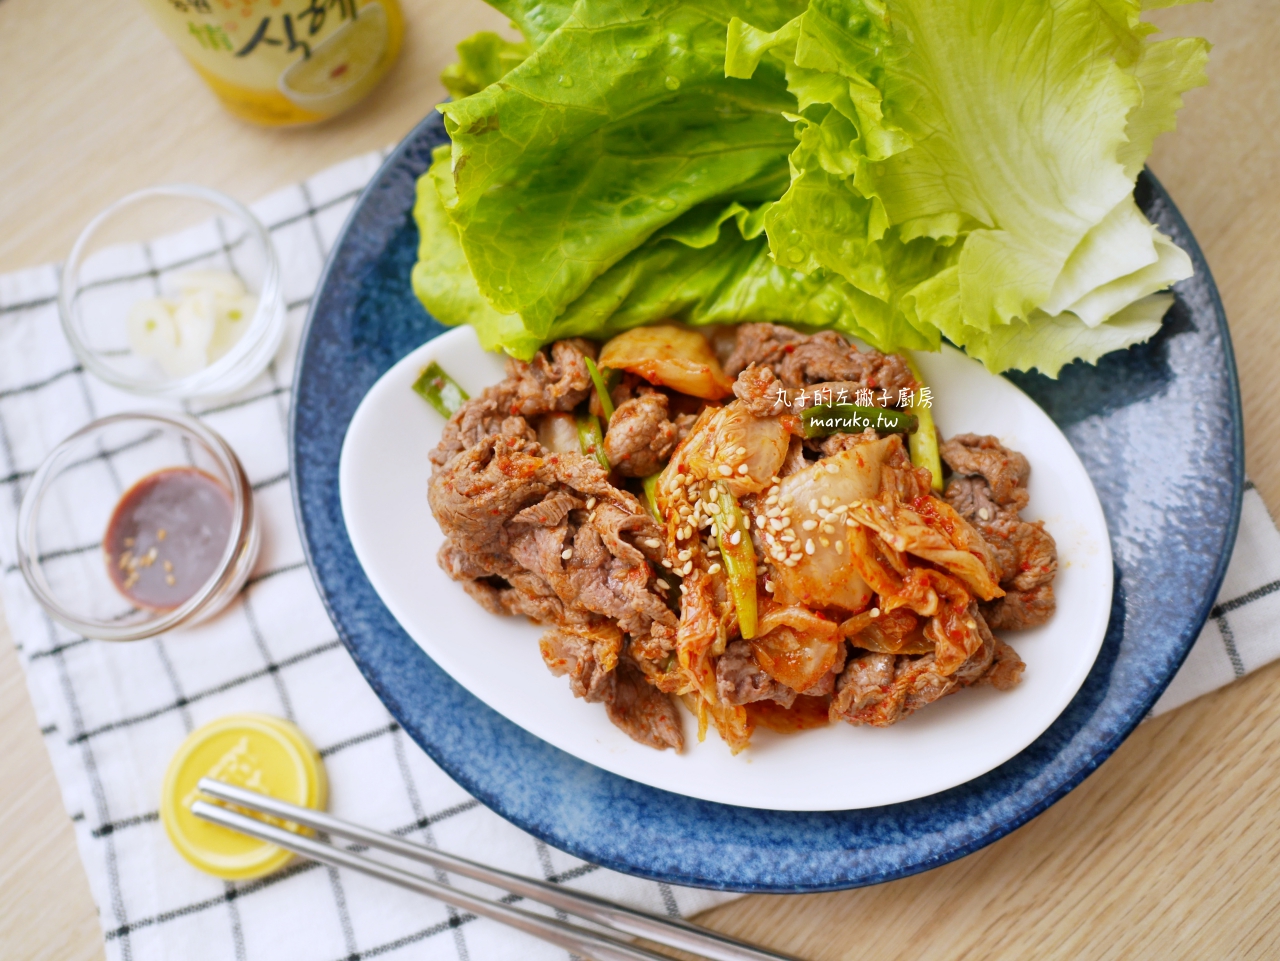 【食譜】泡菜炒牛肉 零廚藝 超道地的韓式料理 簡單上桌